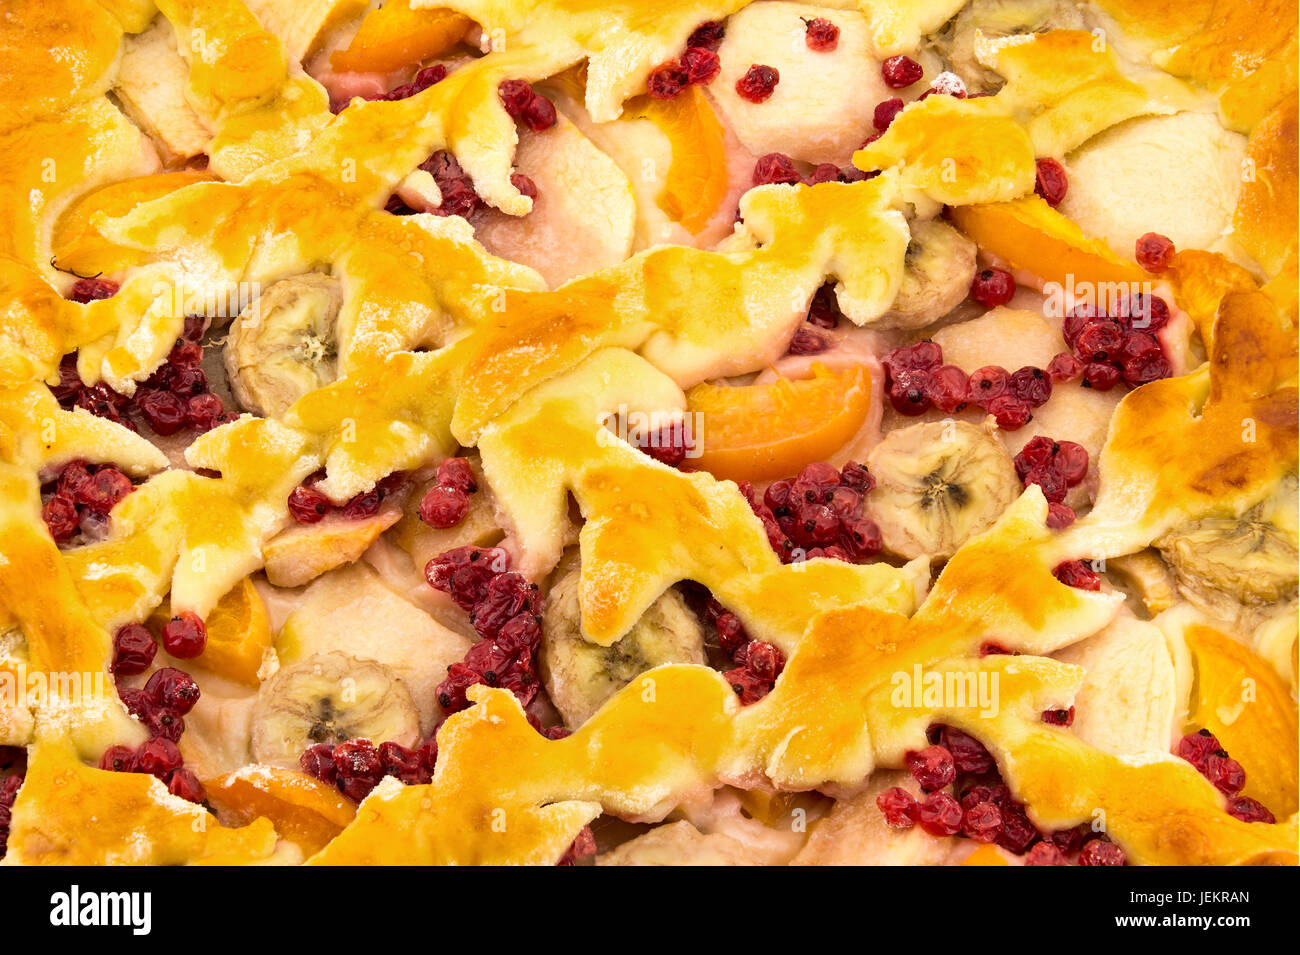 Fatto in casa con la torta di mele, albicocche, banane e ribes rosso isolato su sfondo bianco vista superiore Foto Stock